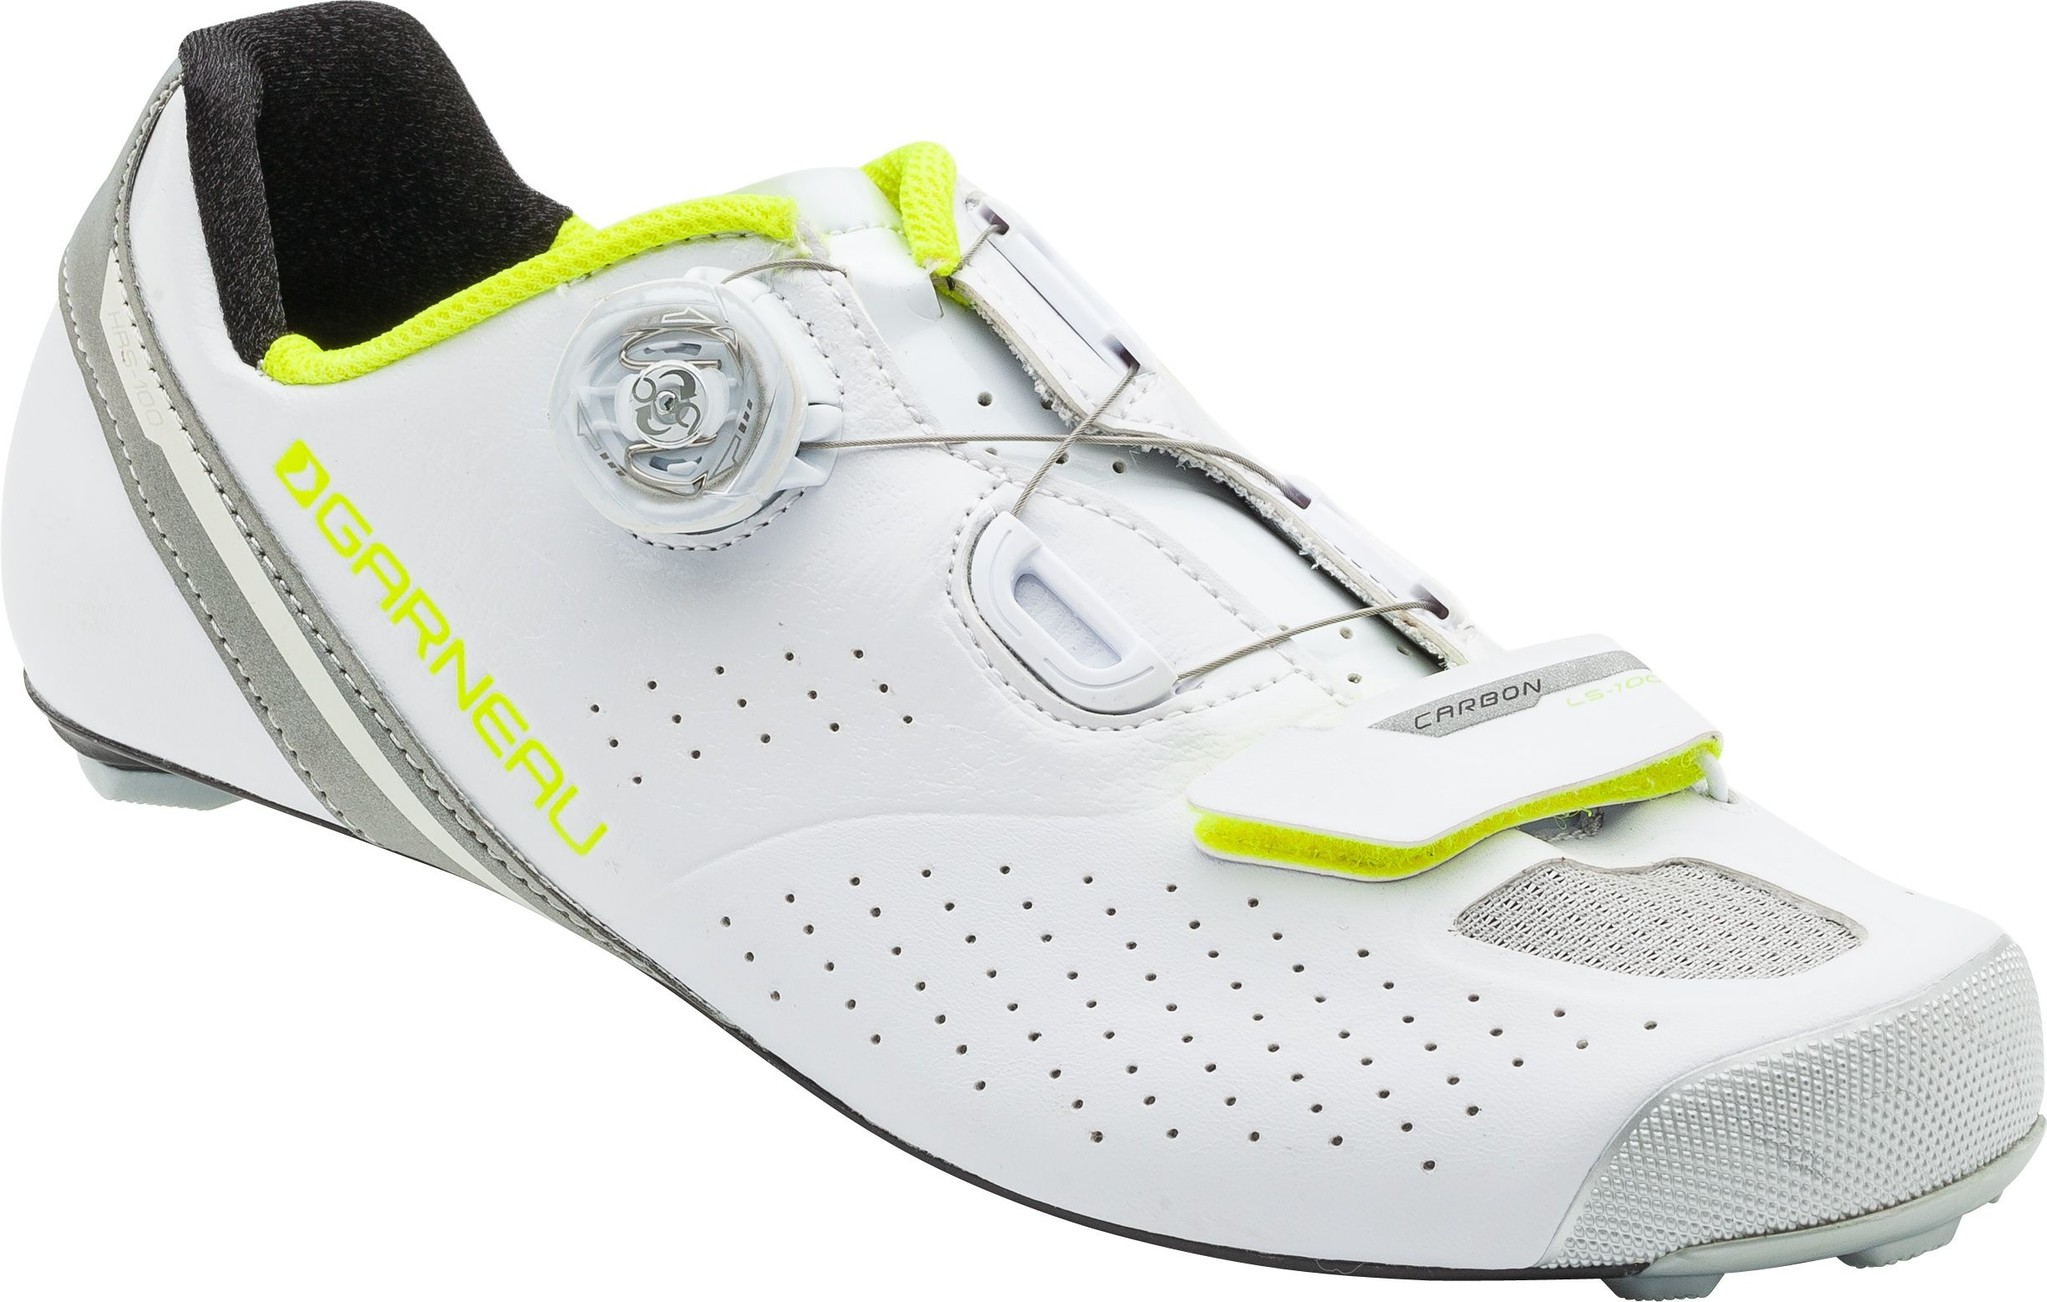 Garneau Tri Air Shoes - Continental Ski & Bike